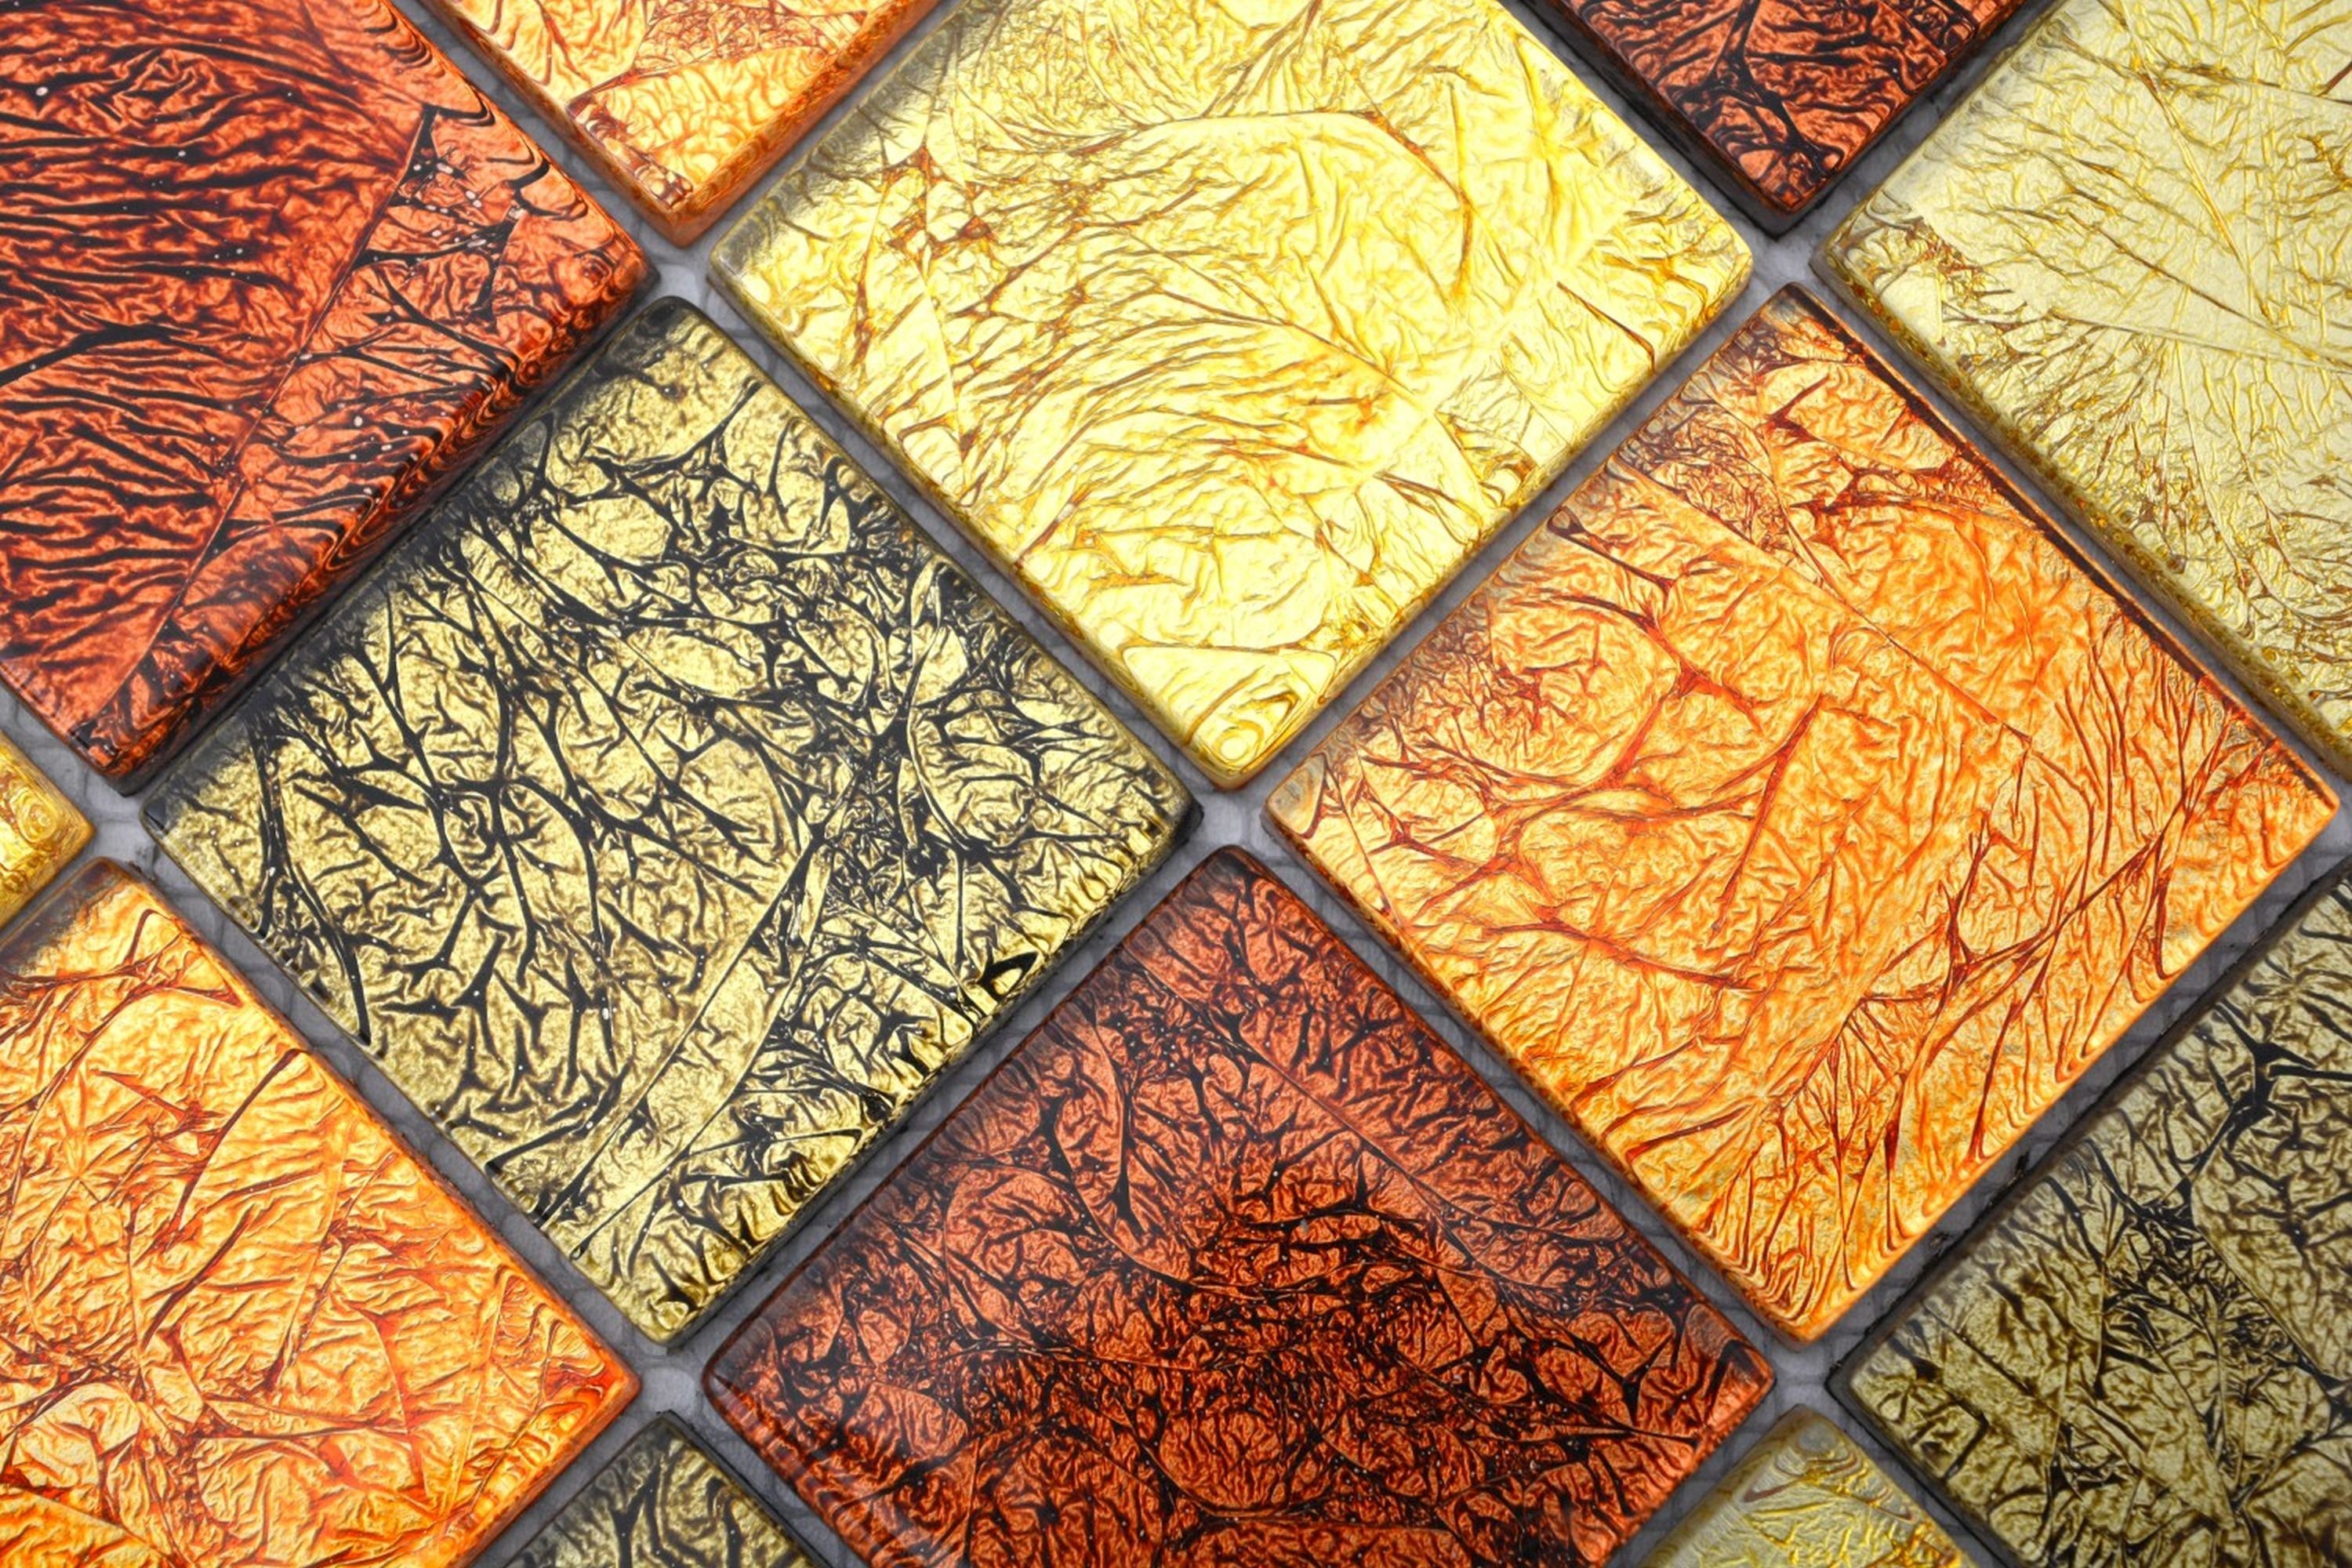 Mosani Mosaikfliesen Glasmosaik Küche Mosaikfliese Fliesenspiegel gold Struktur orange